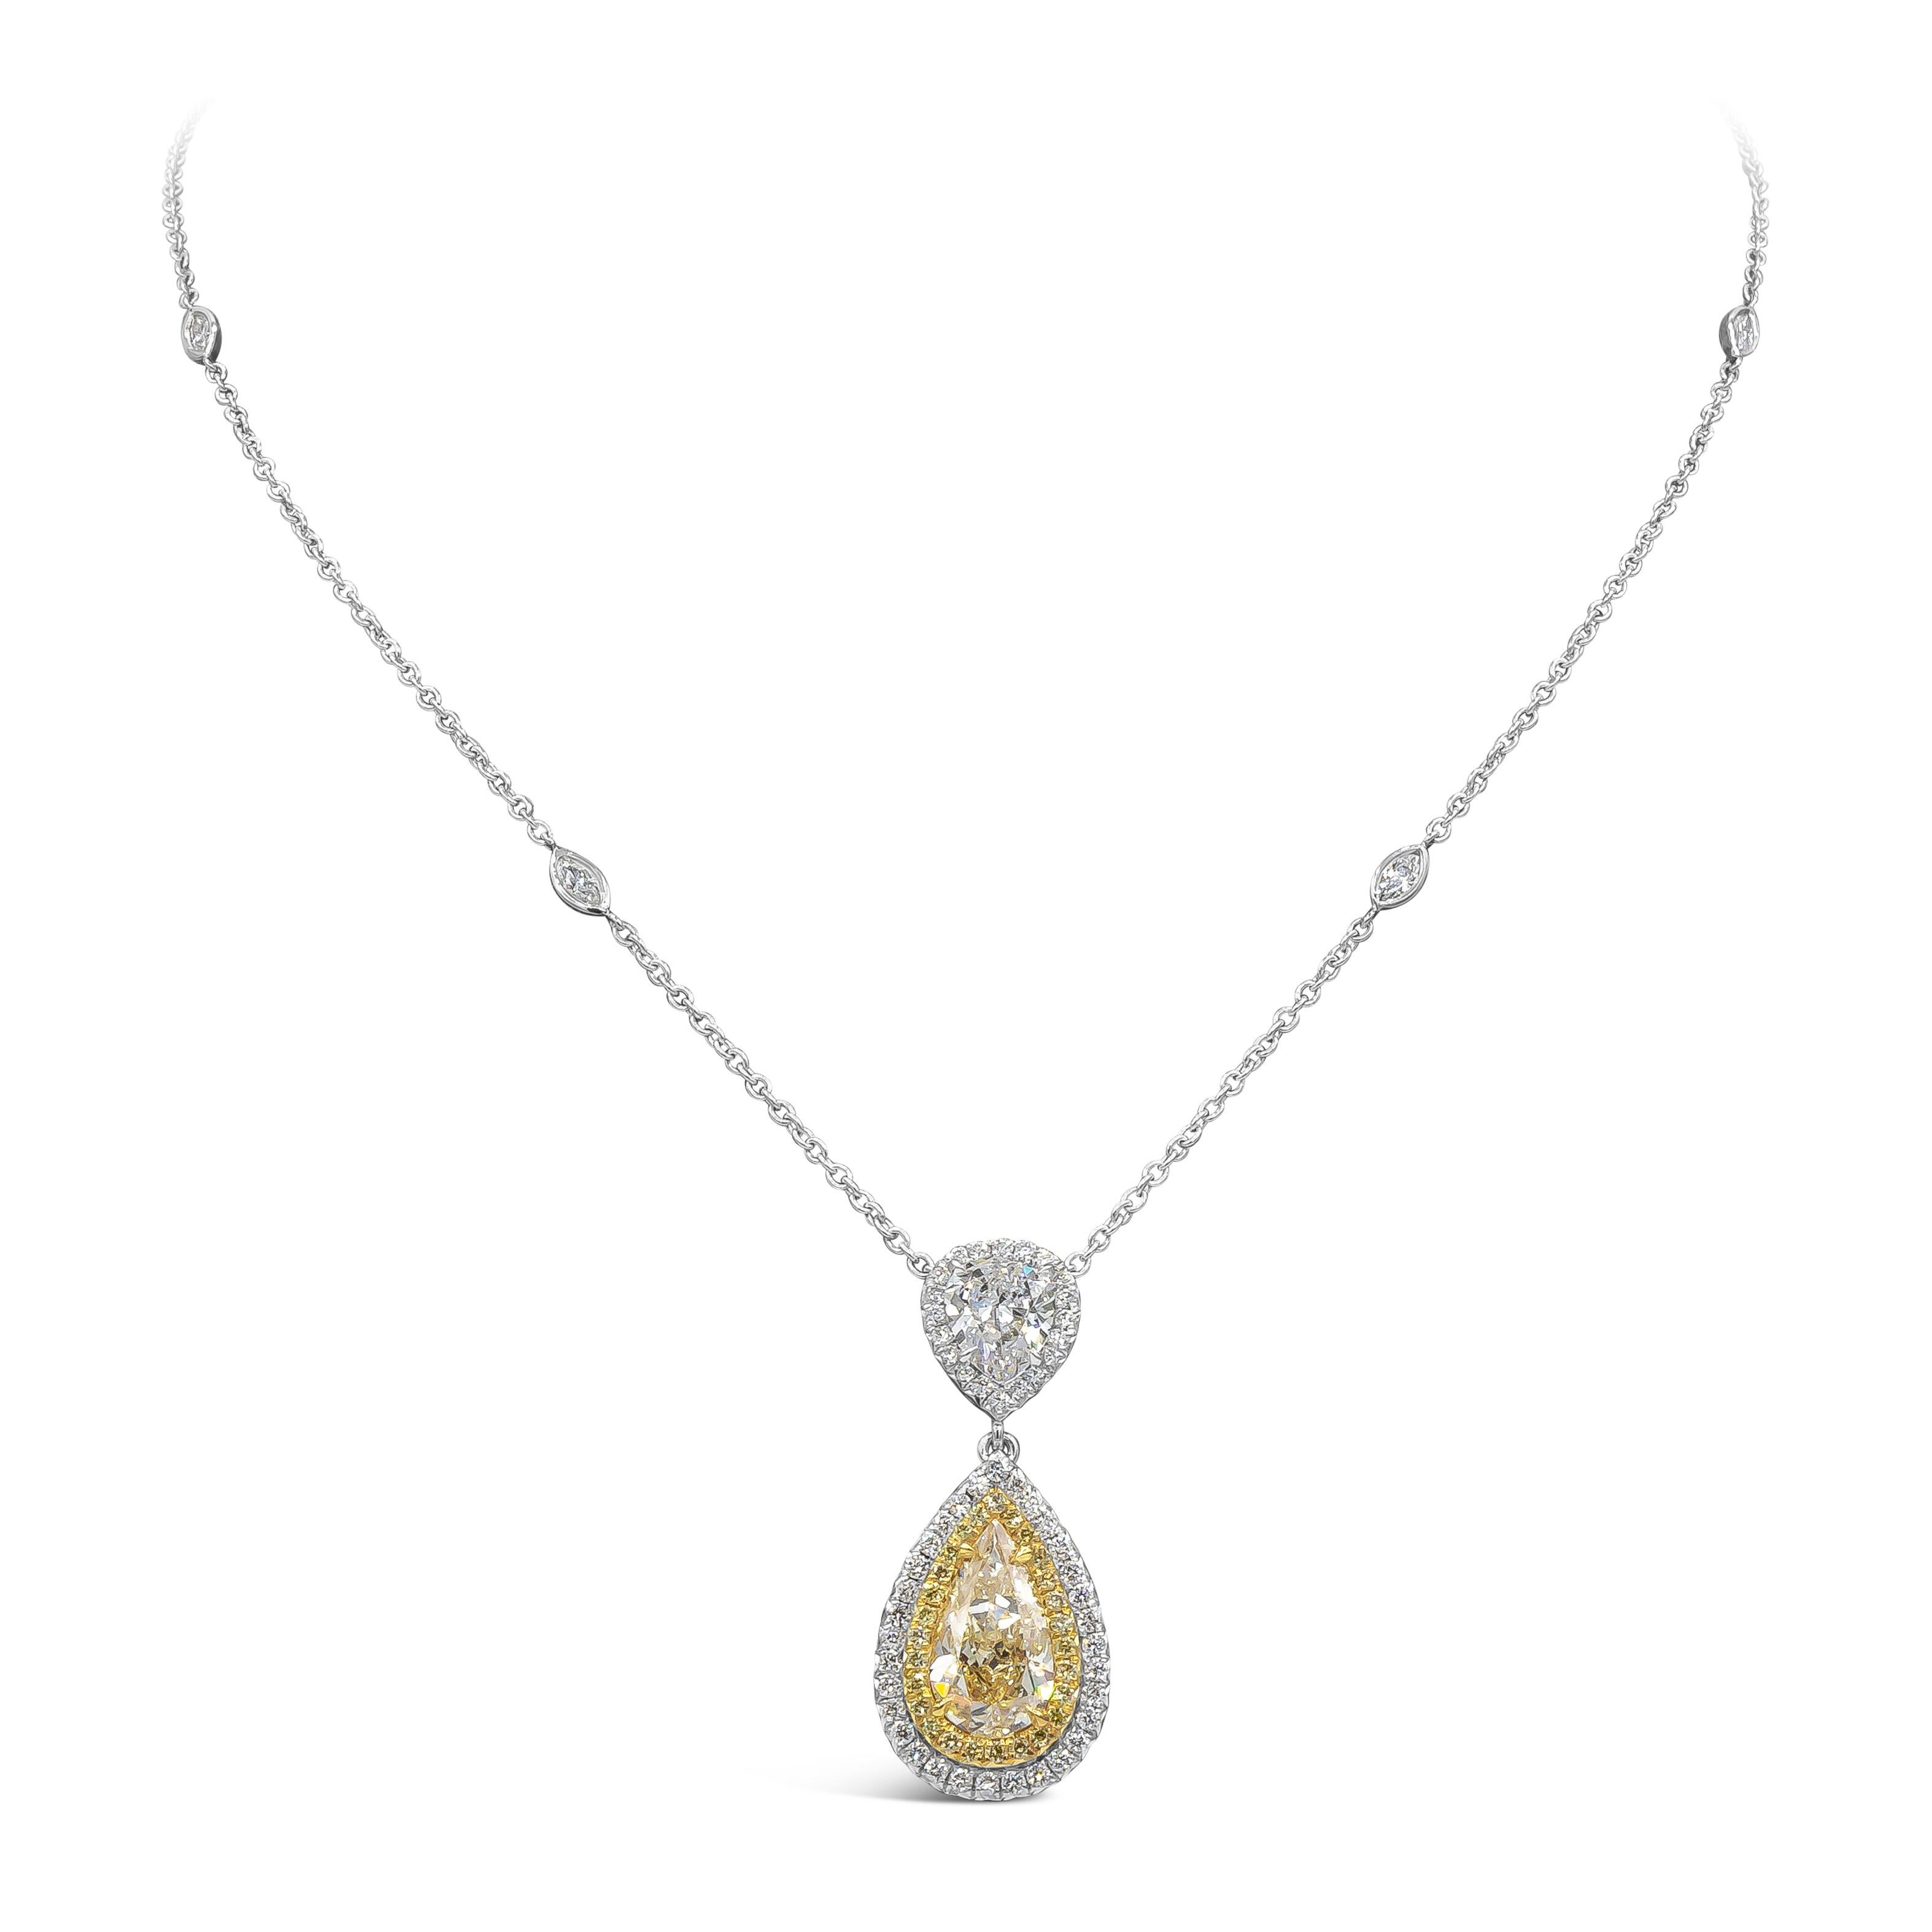 Präsentiert wird ein 2,07 Karat schwerer, birnenförmiger gelber Diamant, der von GIA als U-V Farbe zertifiziert wurde. Um den zentralen Diamanten herum sind zwei Reihen runder gelber und weißer Brillanten angeordnet. Aufgehängt an einem weiteren